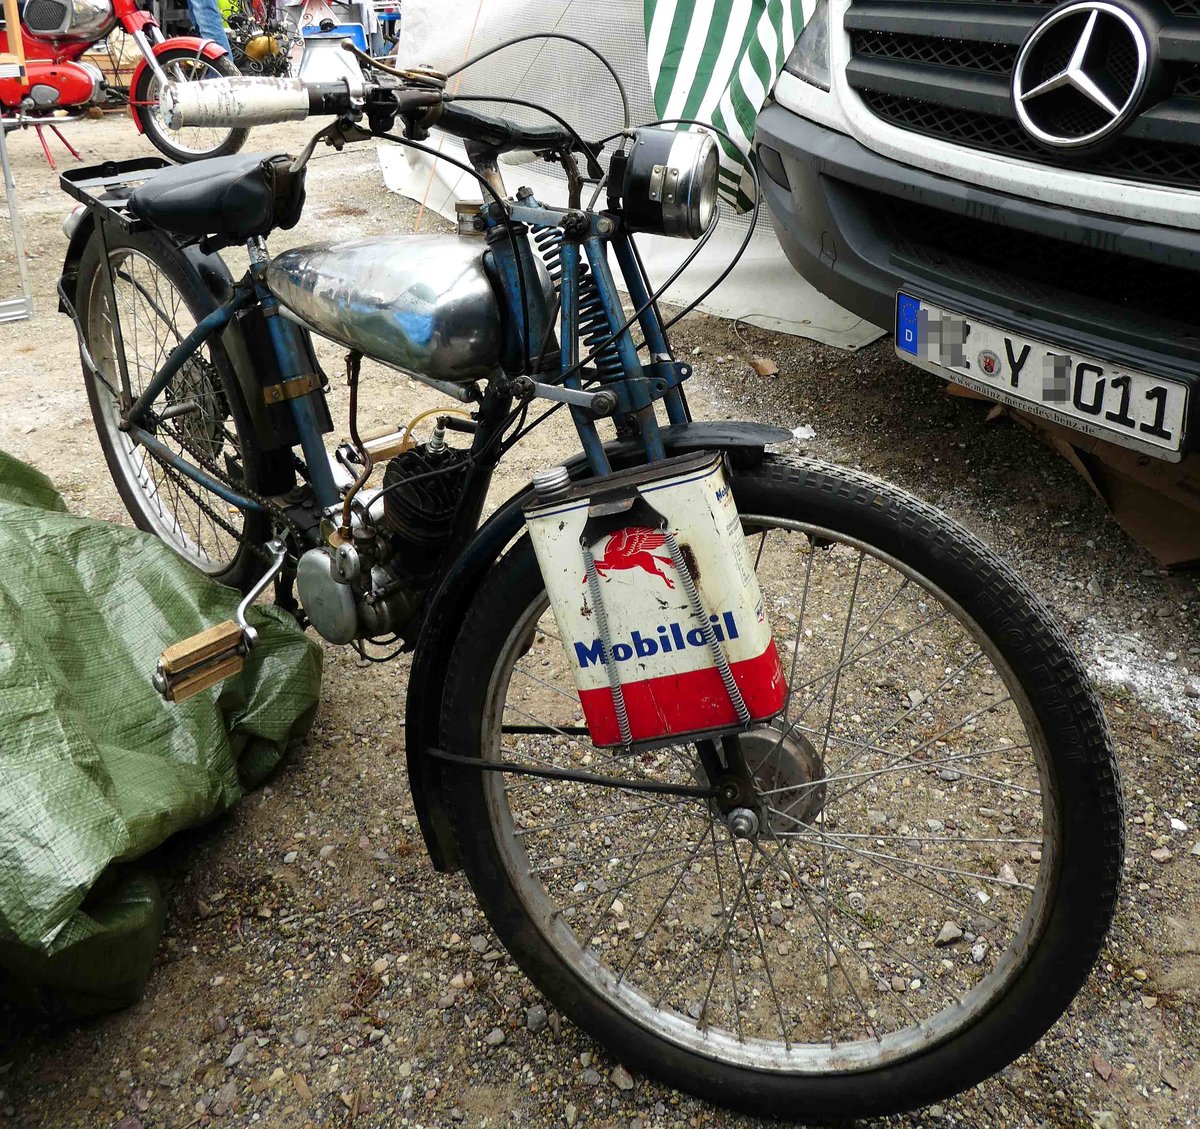 =unbekanntes Moped, gesehen bei dem Veterama 2016 in Mannheim, Juli 2016